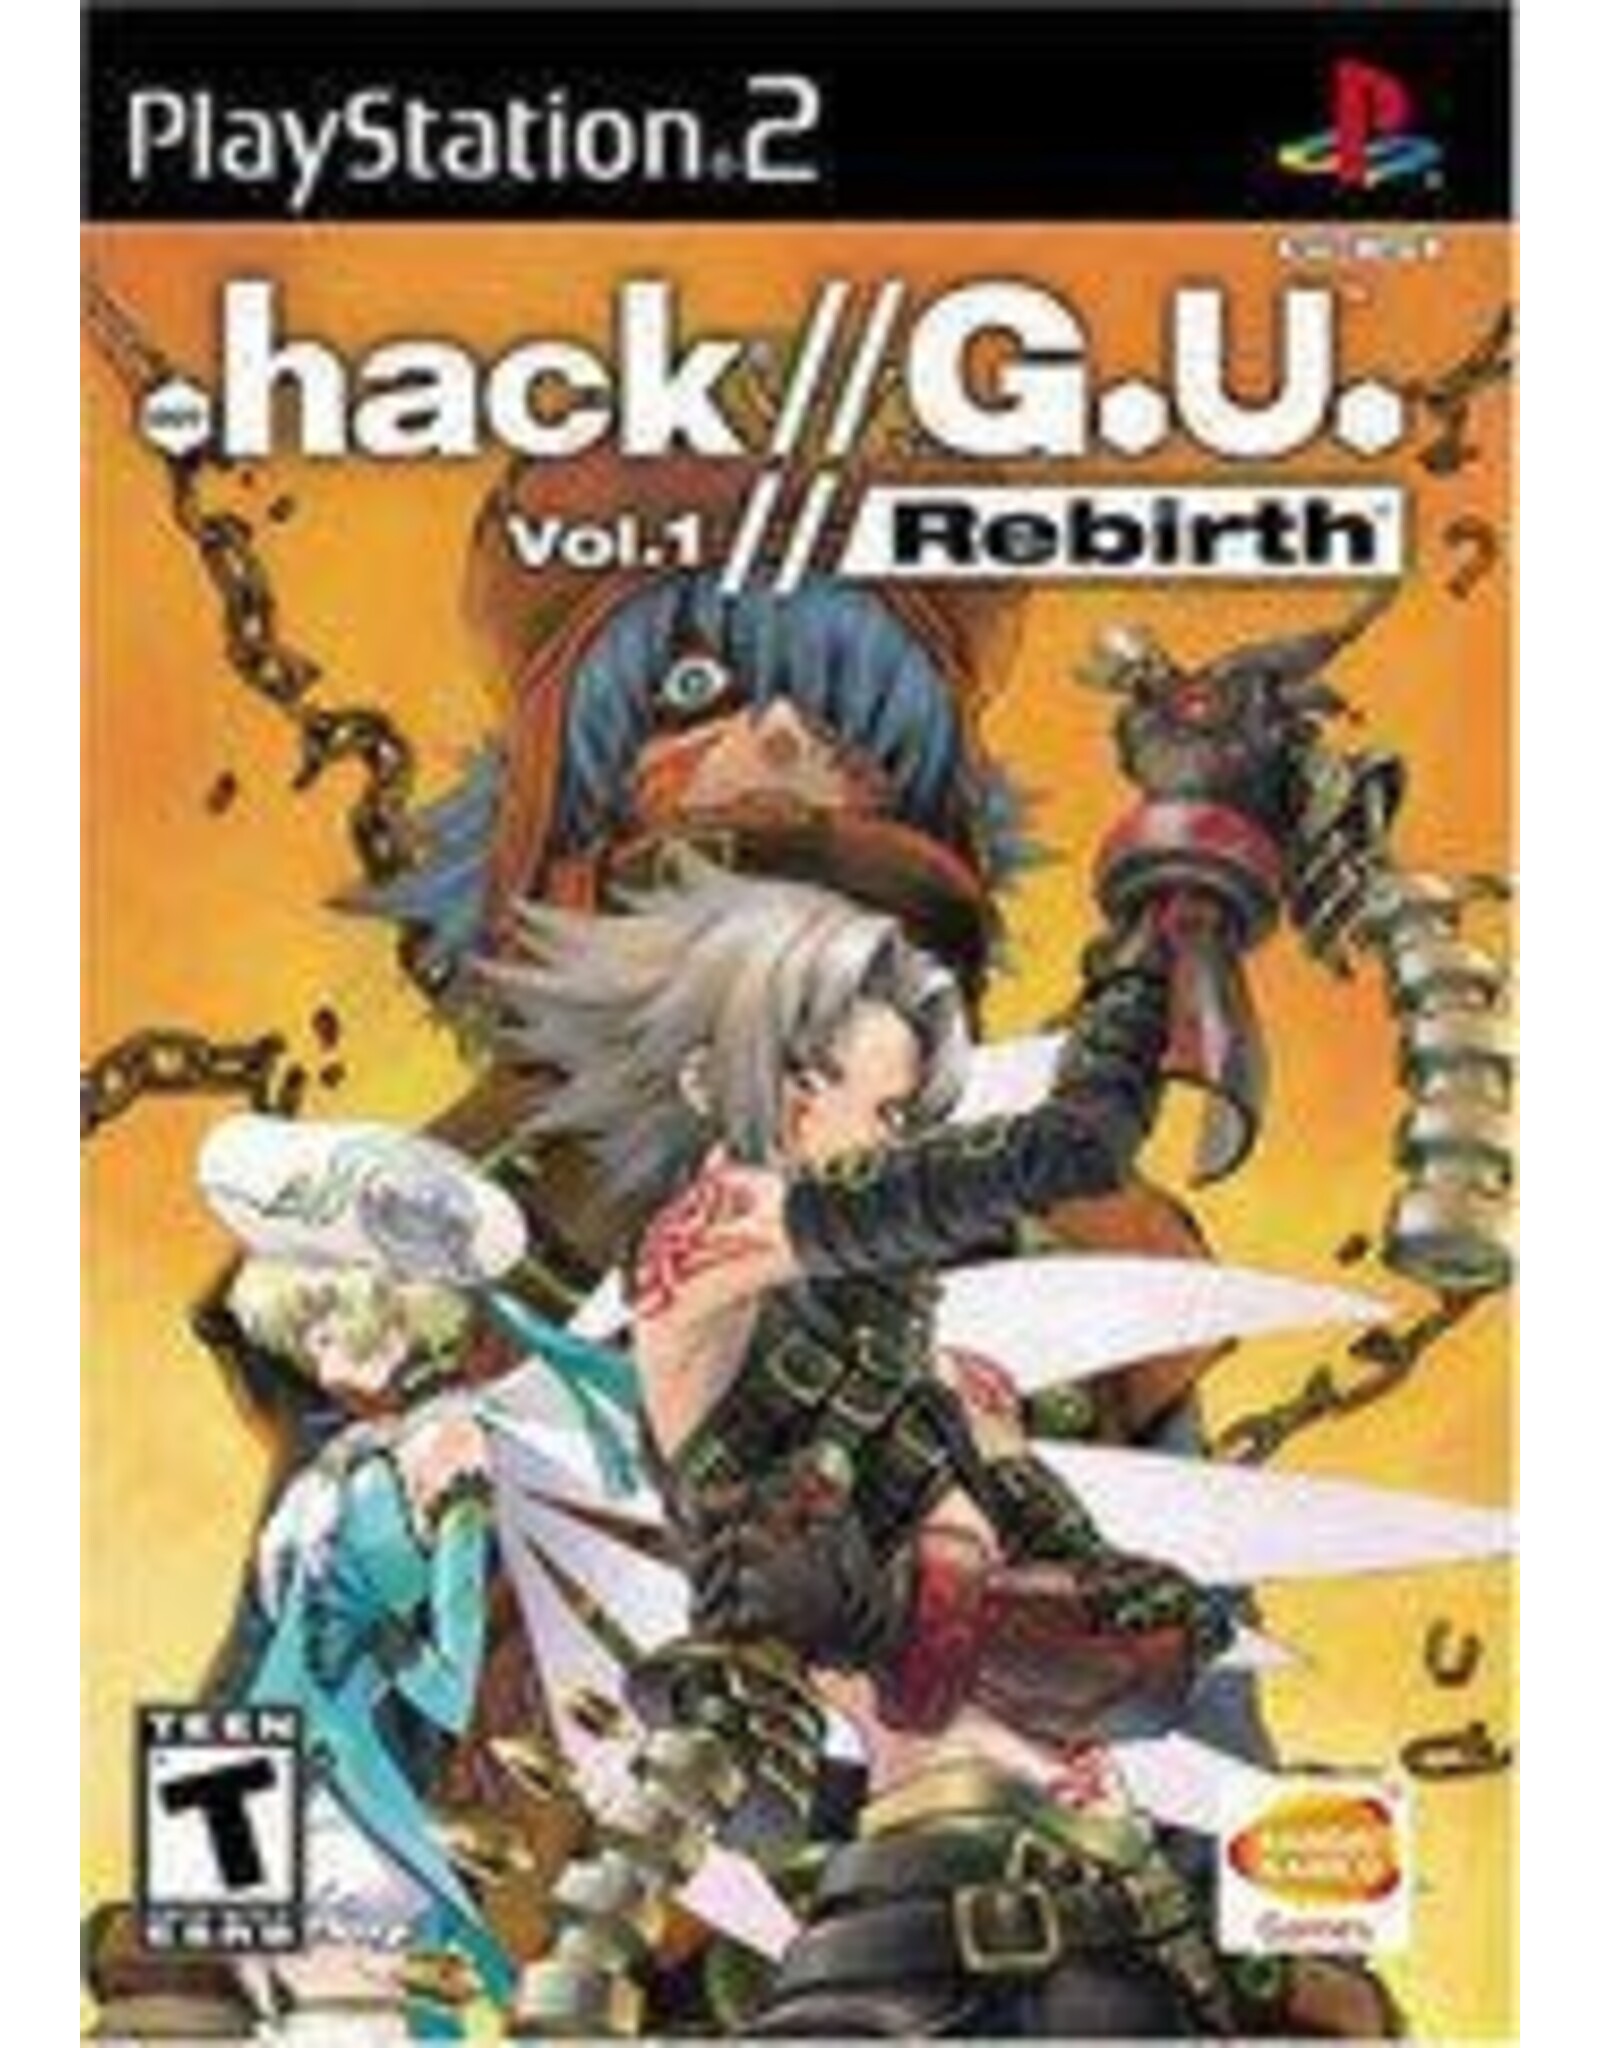 Playstation 2 .hack GU Volume 1: Rebirth (No Manual)